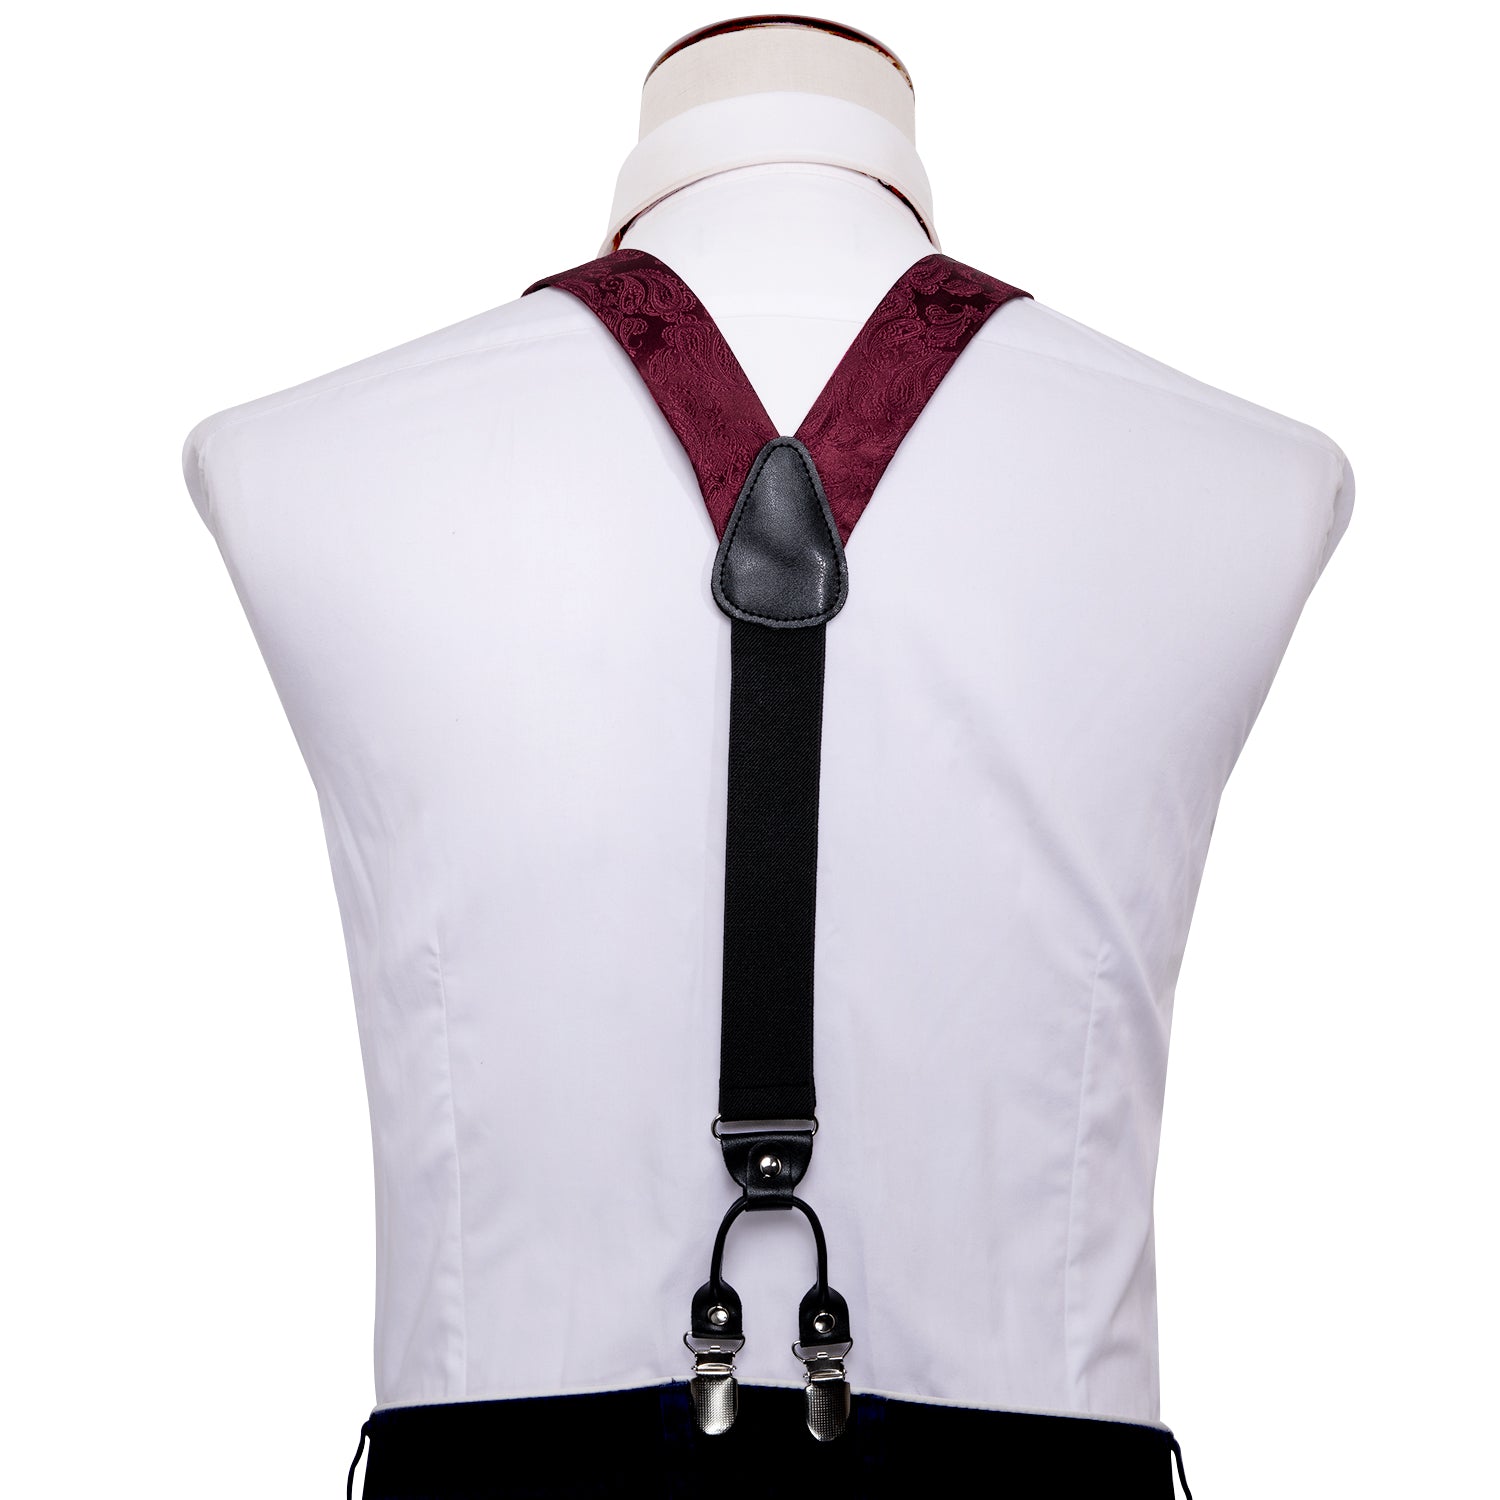 Barry.wang Red Tie Burgundy Paisley Y Back Adjustable Suspenders Bow Tie Set